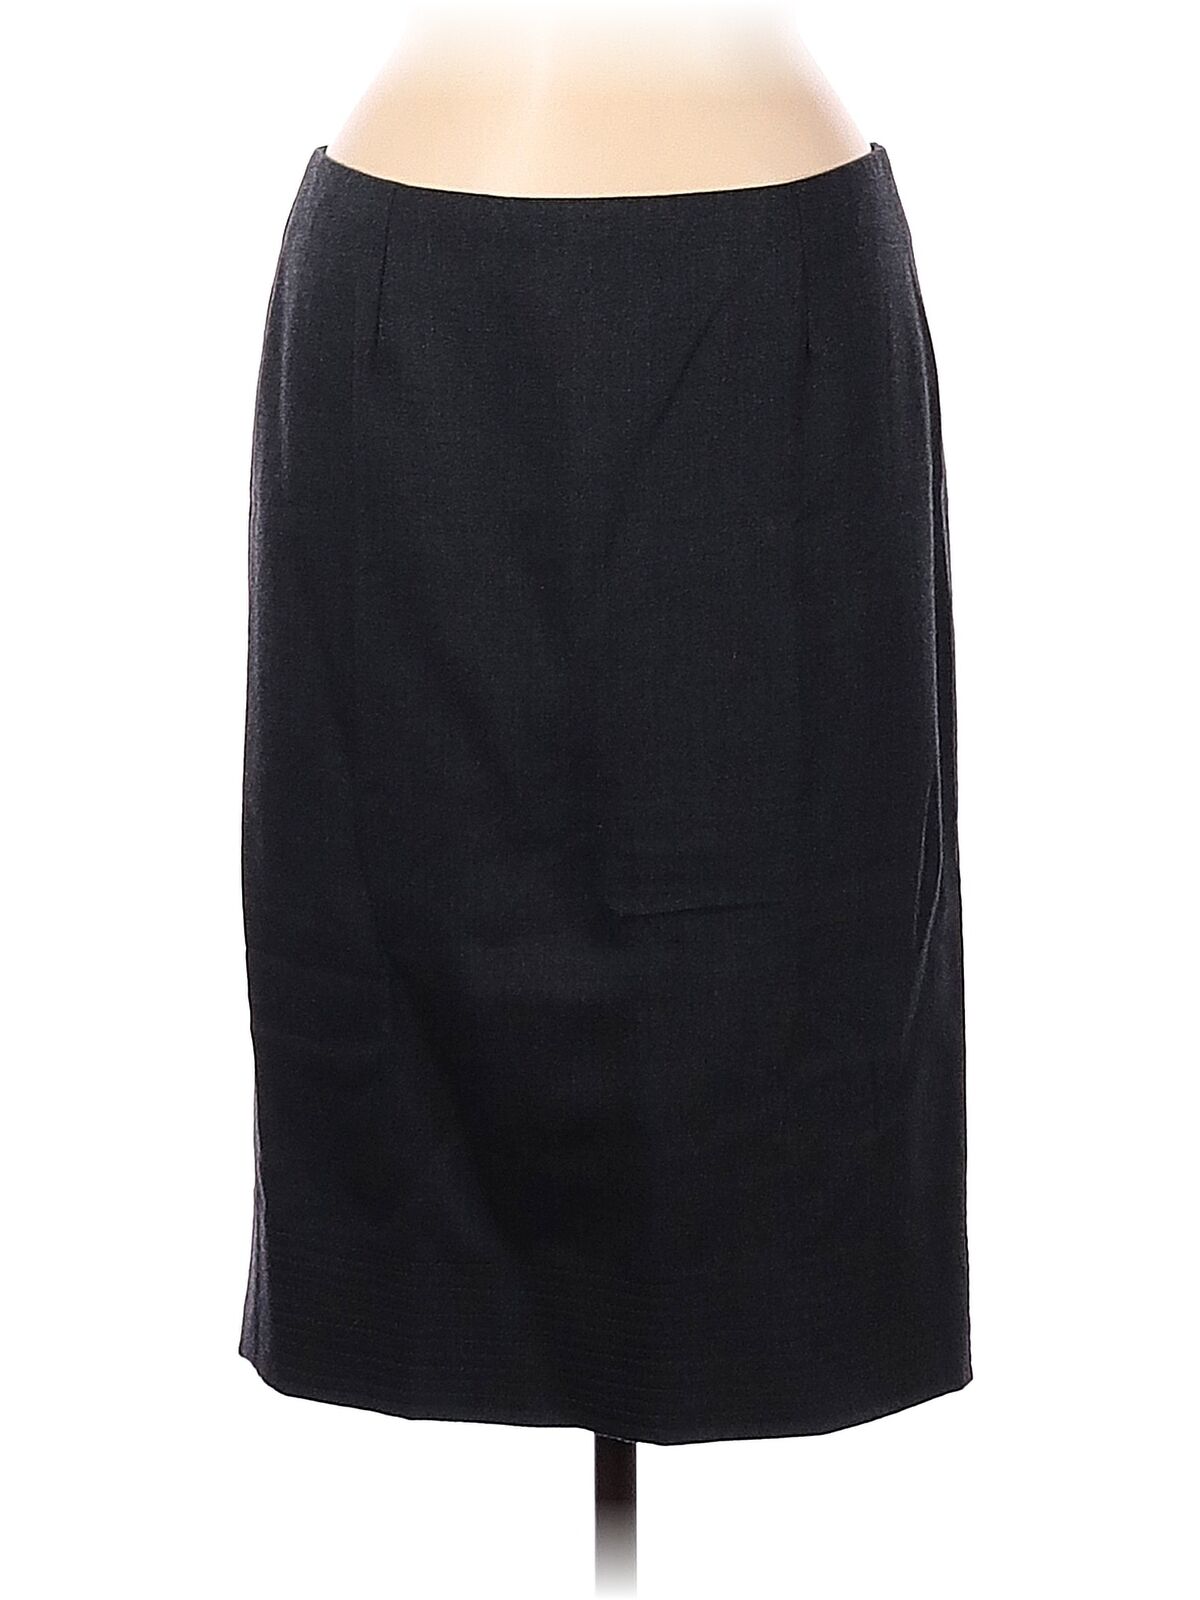 Blumarine Women Black Wool Skirt 44 italian - image 1